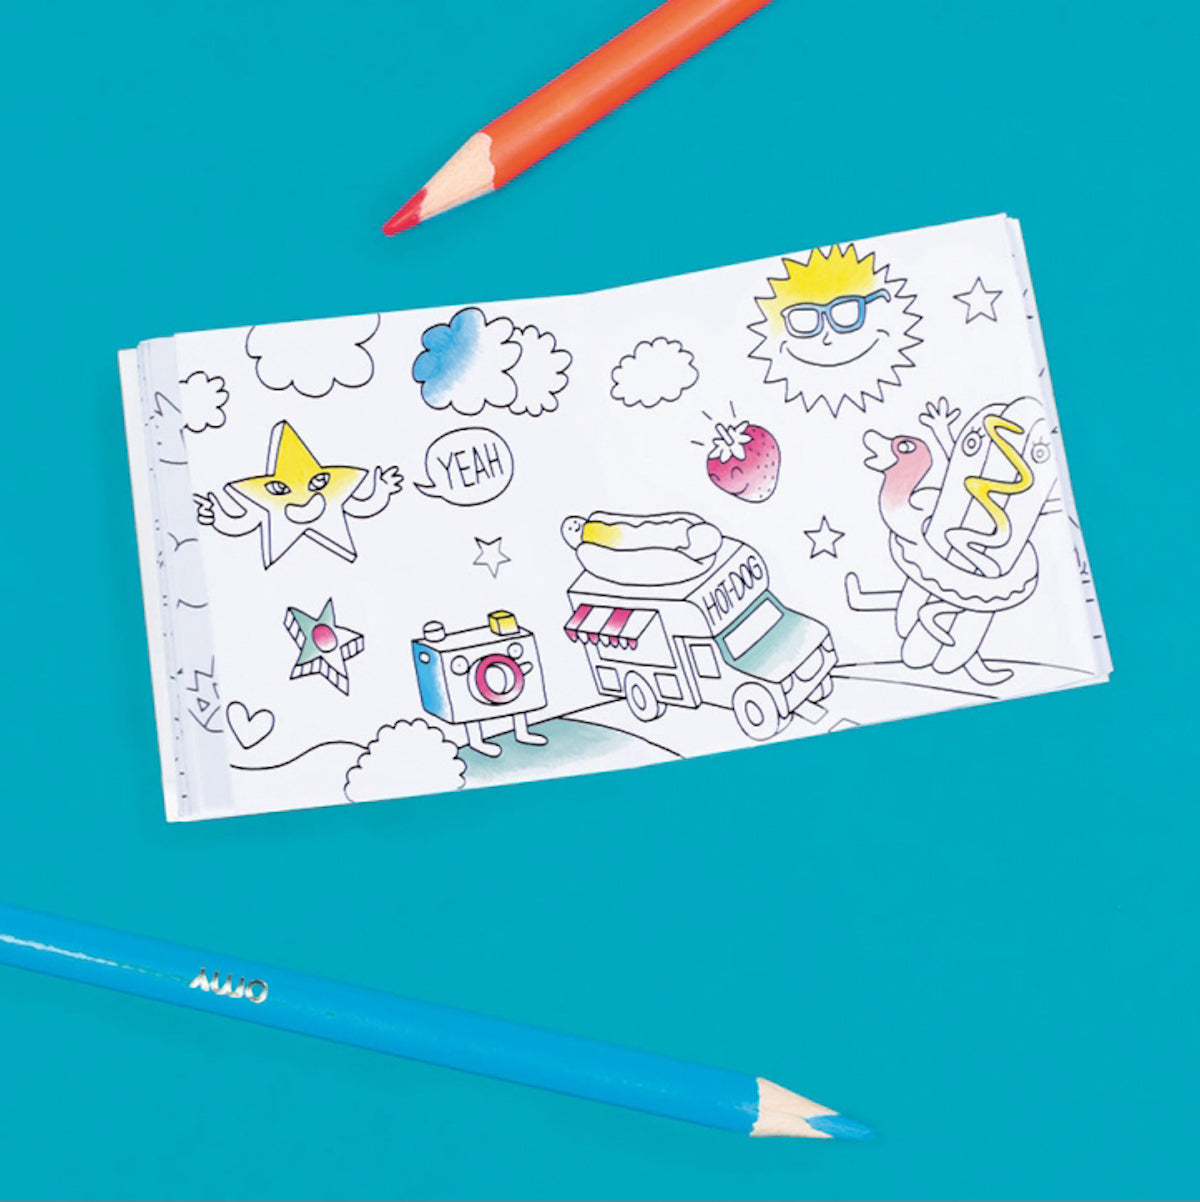 OMY pocket kleurboekje supermini is het kleinste kleurboekje ter wereld! Dit mini formaat kleurboekje is super schattig én super handig, want hij past in elke (broek)zak, dus je kunt hem overal mee naartoe nemen. VanZus